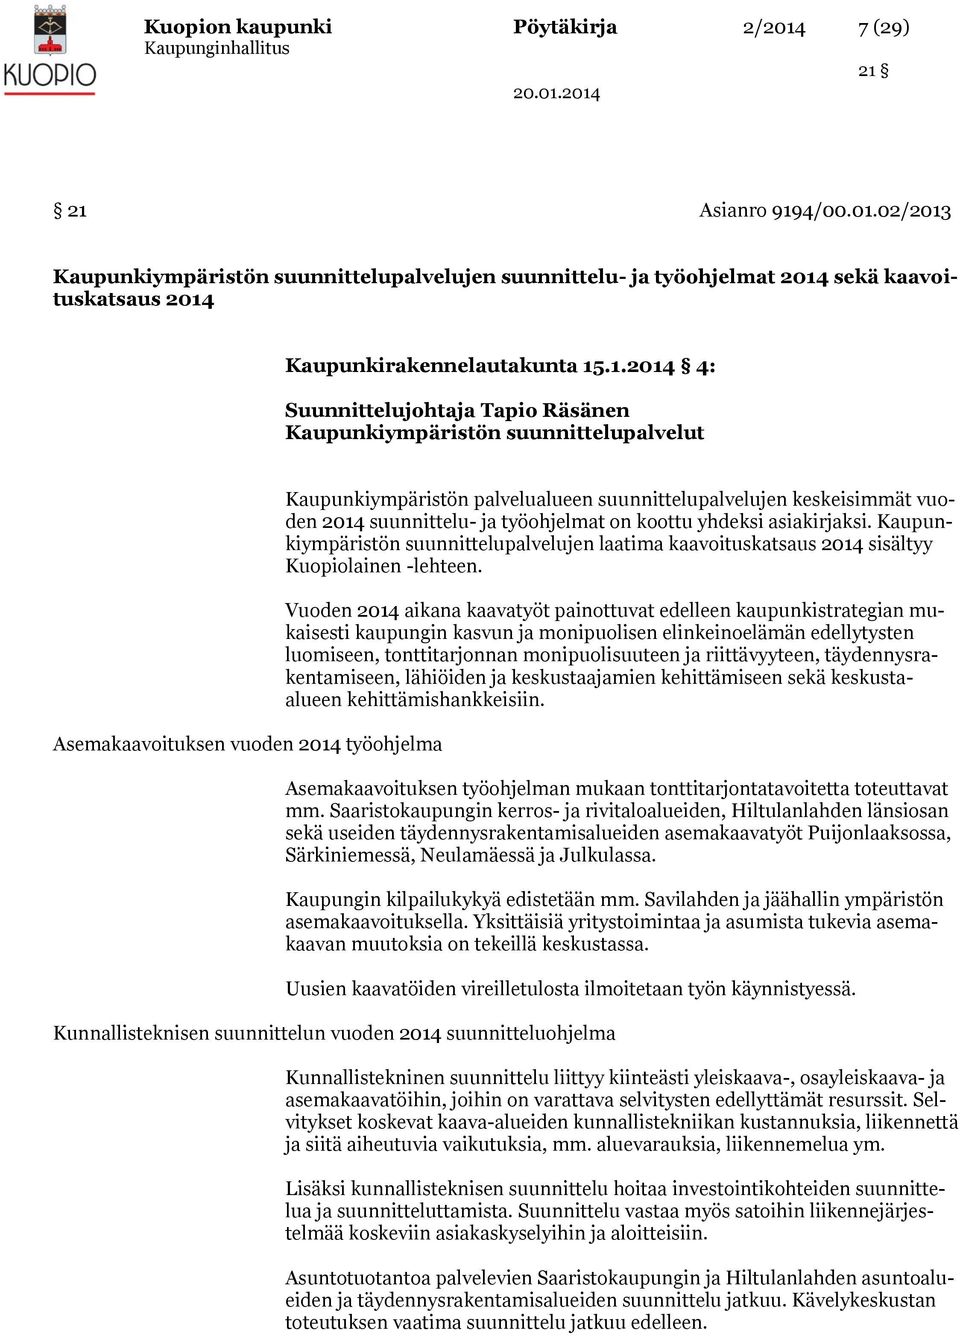 2014 suunnittelu- ja työohjelmat on koottu yhdeksi asiakirjaksi. Kaupunkiympäristön suunnittelupalvelujen laatima kaavoituskatsaus 2014 sisältyy Kuopiolainen -lehteen.